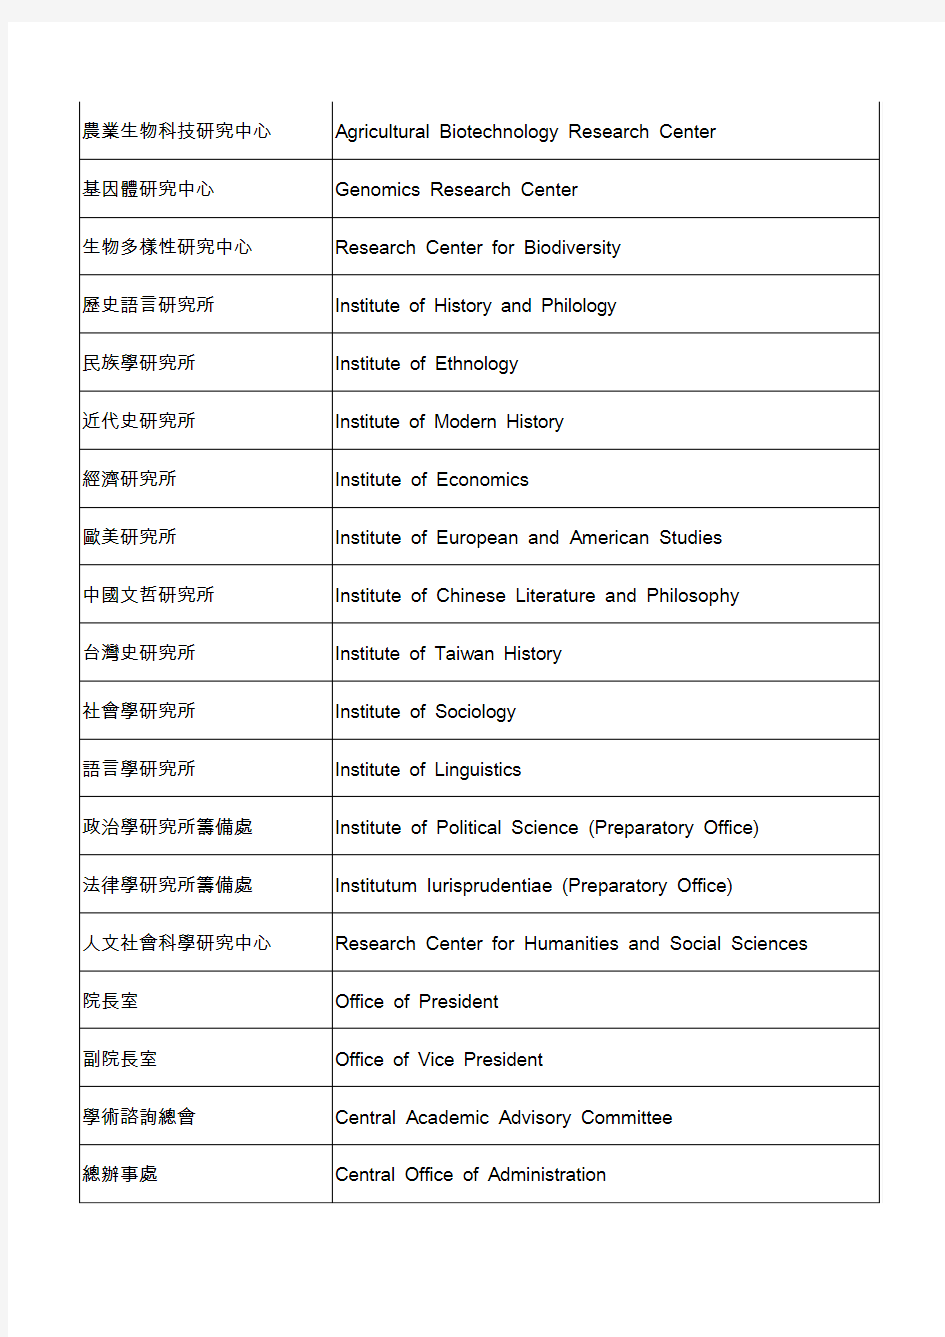 中央研究院各单位名称中英文对照